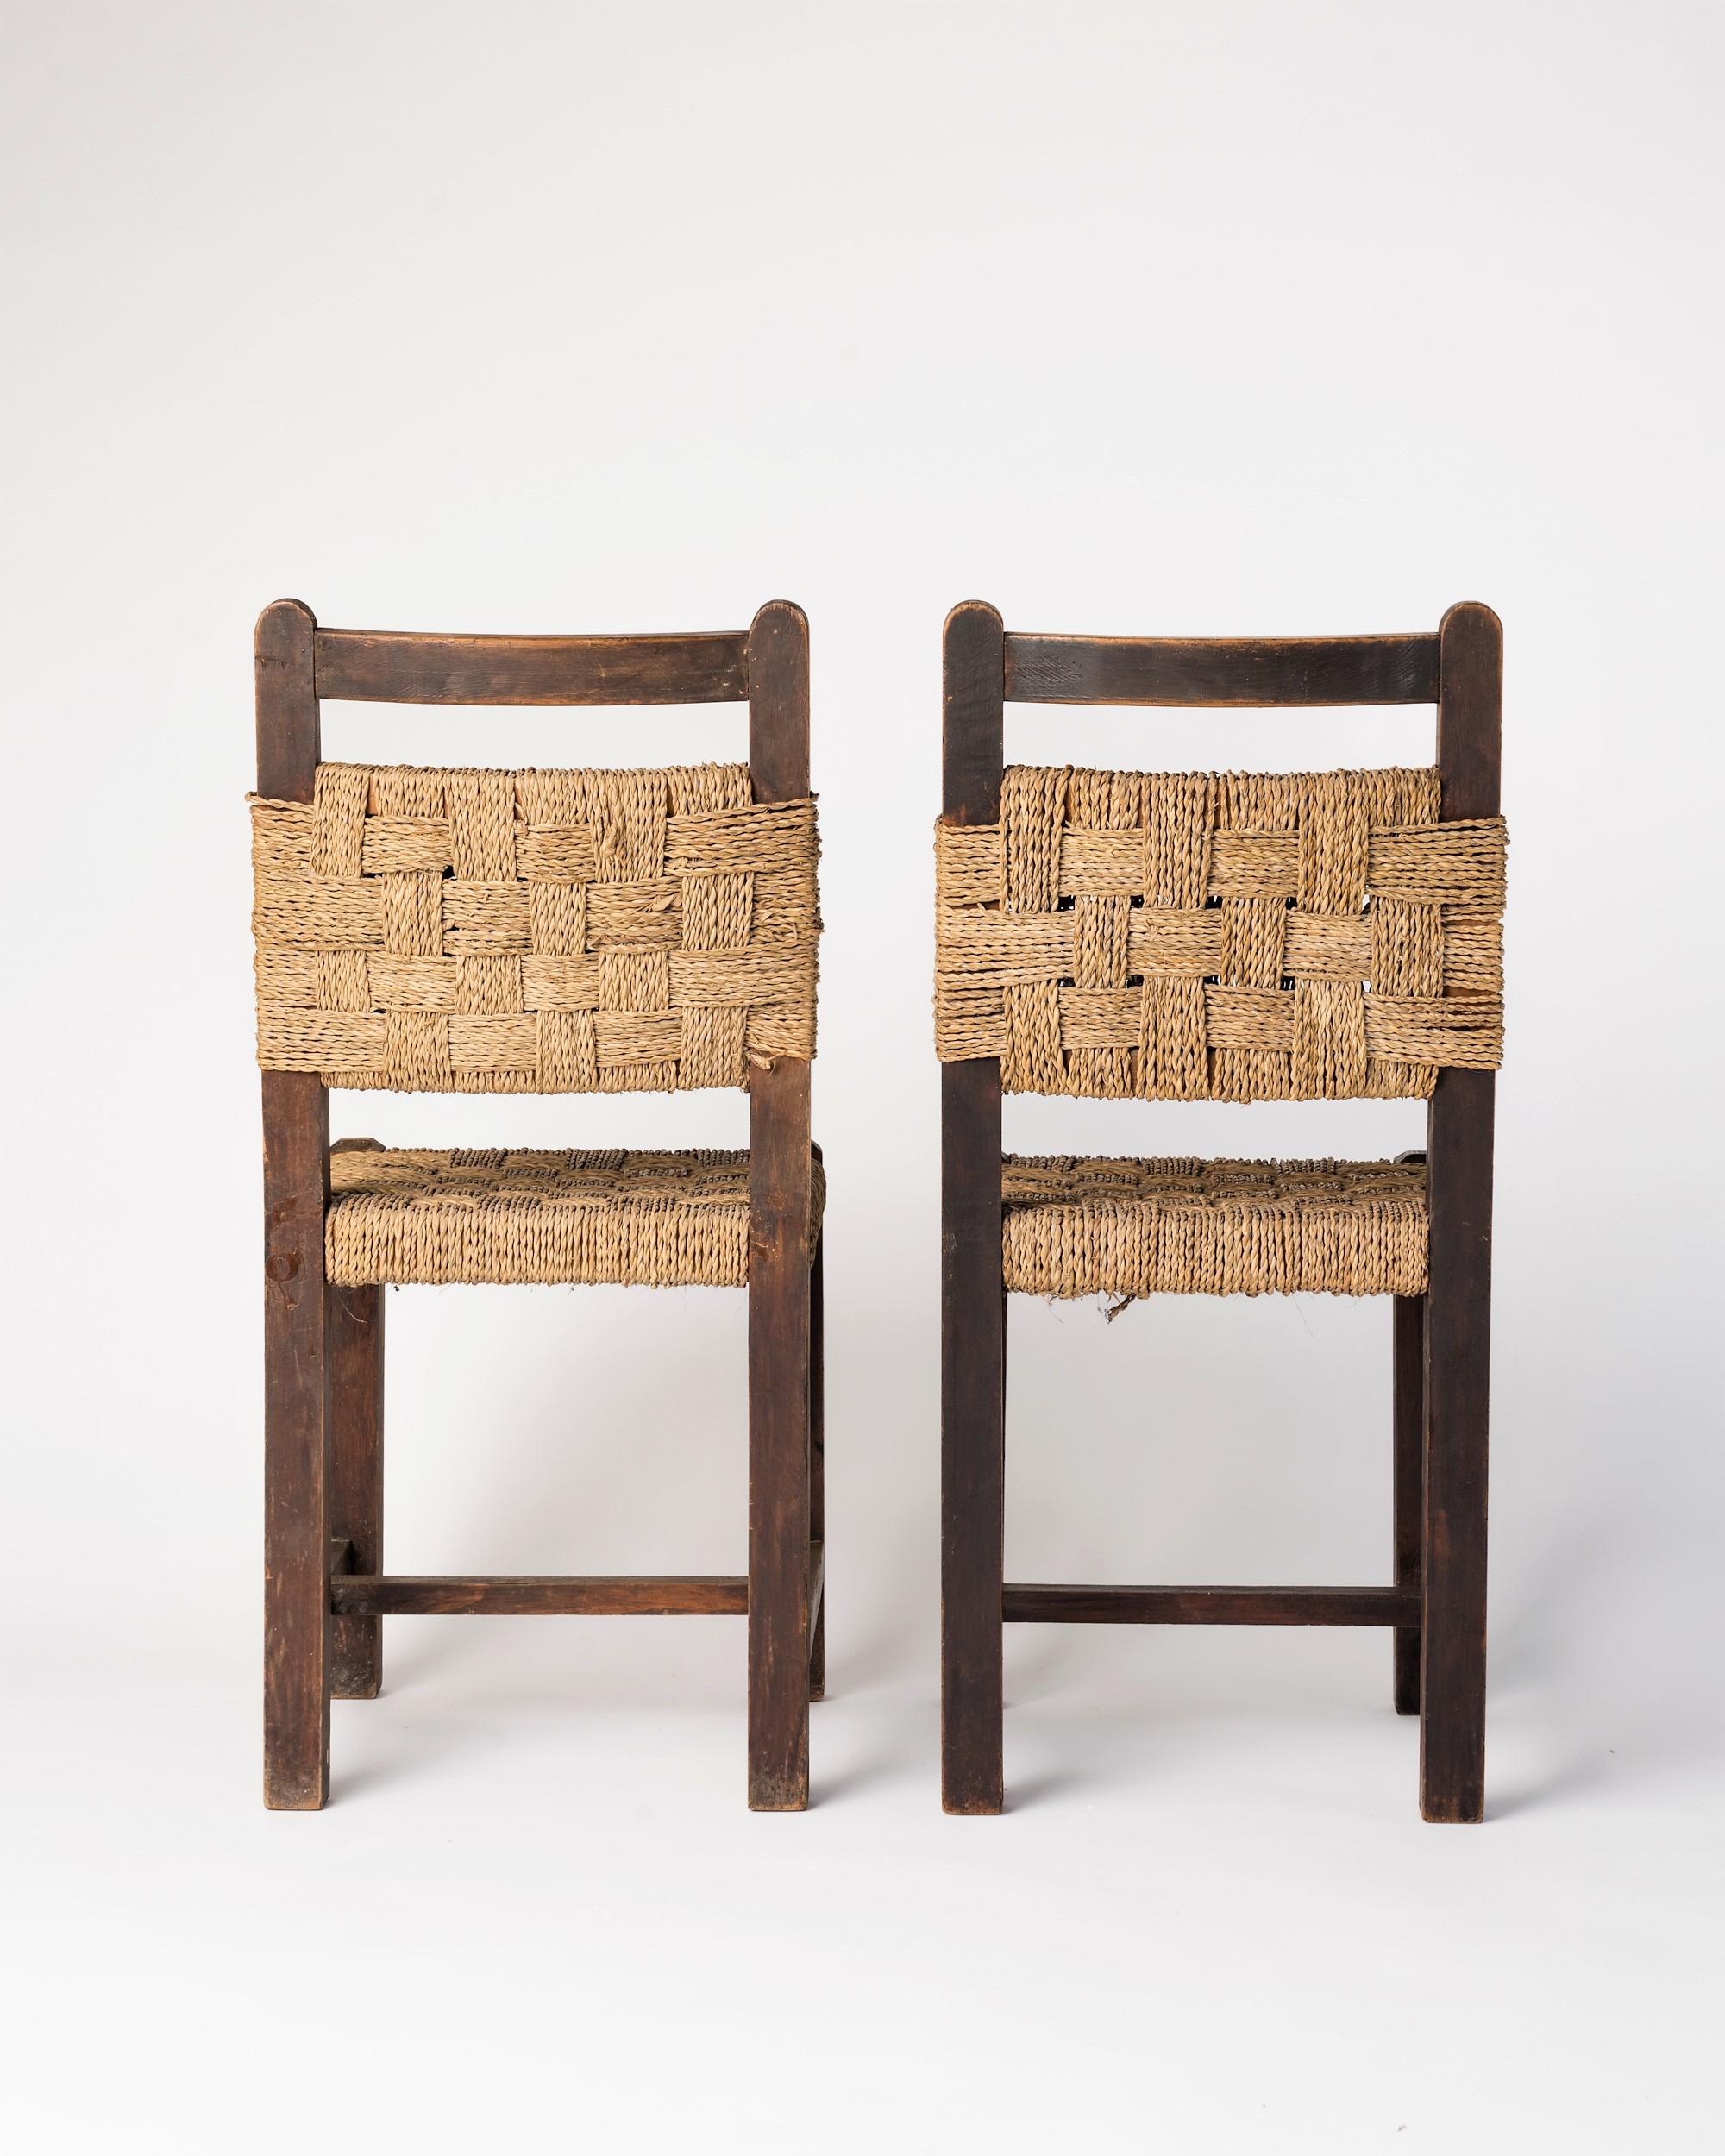 Paire de chaises d'appoint minimalistes en chêne et en corde tressée complexe. Dans le style de Francis Jourdain. Peut être utilisé dans un salon ou individuellement comme chaise de bureau.
Bon état vintage.
Ces chaises seront expédiées depuis la